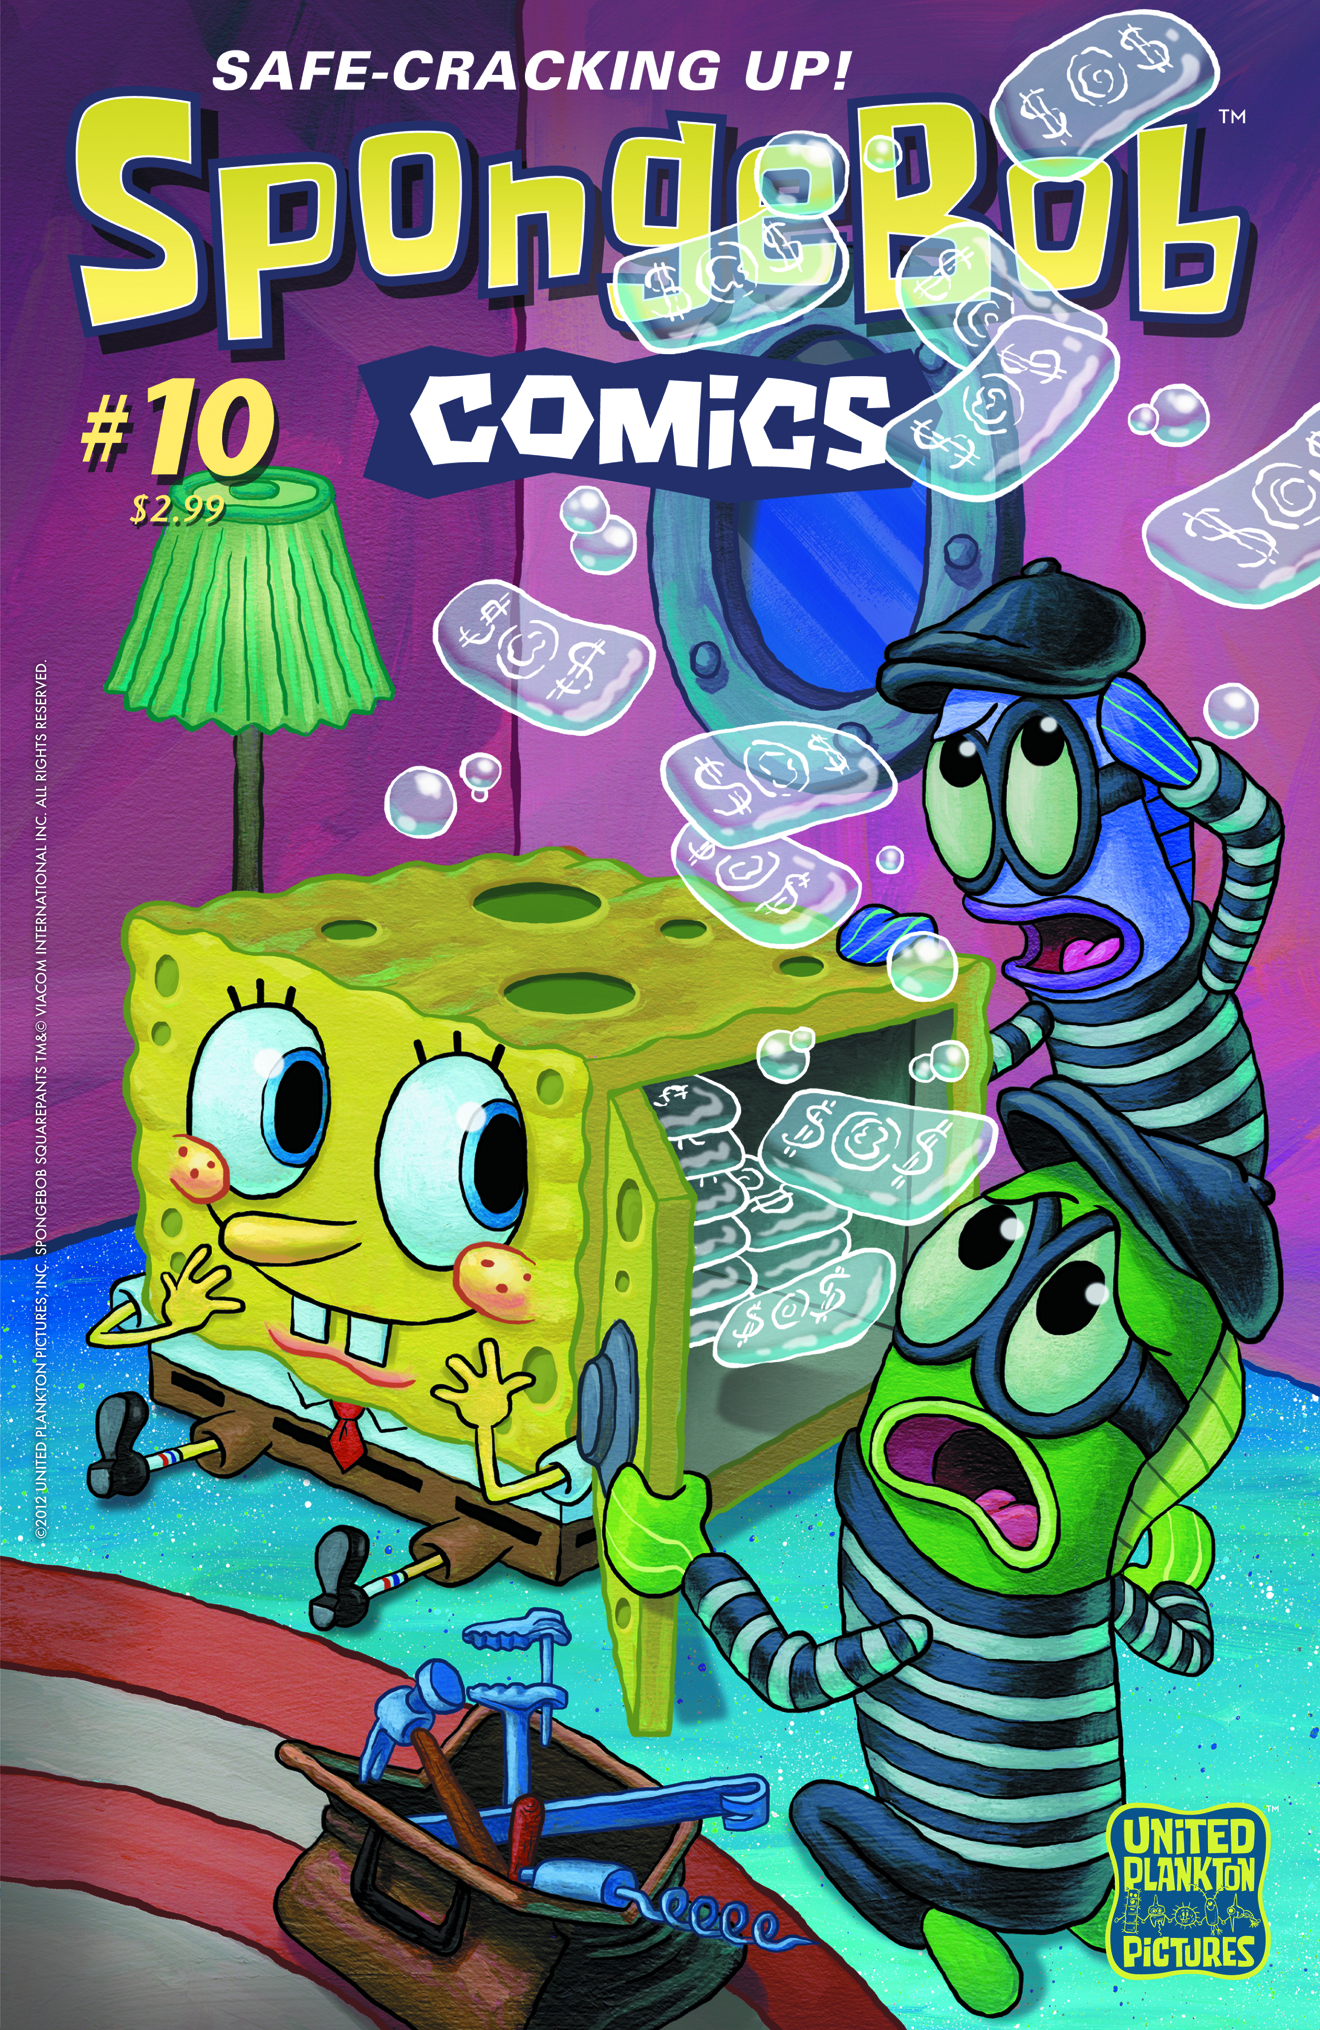 SPONGEBOB COMICS #10